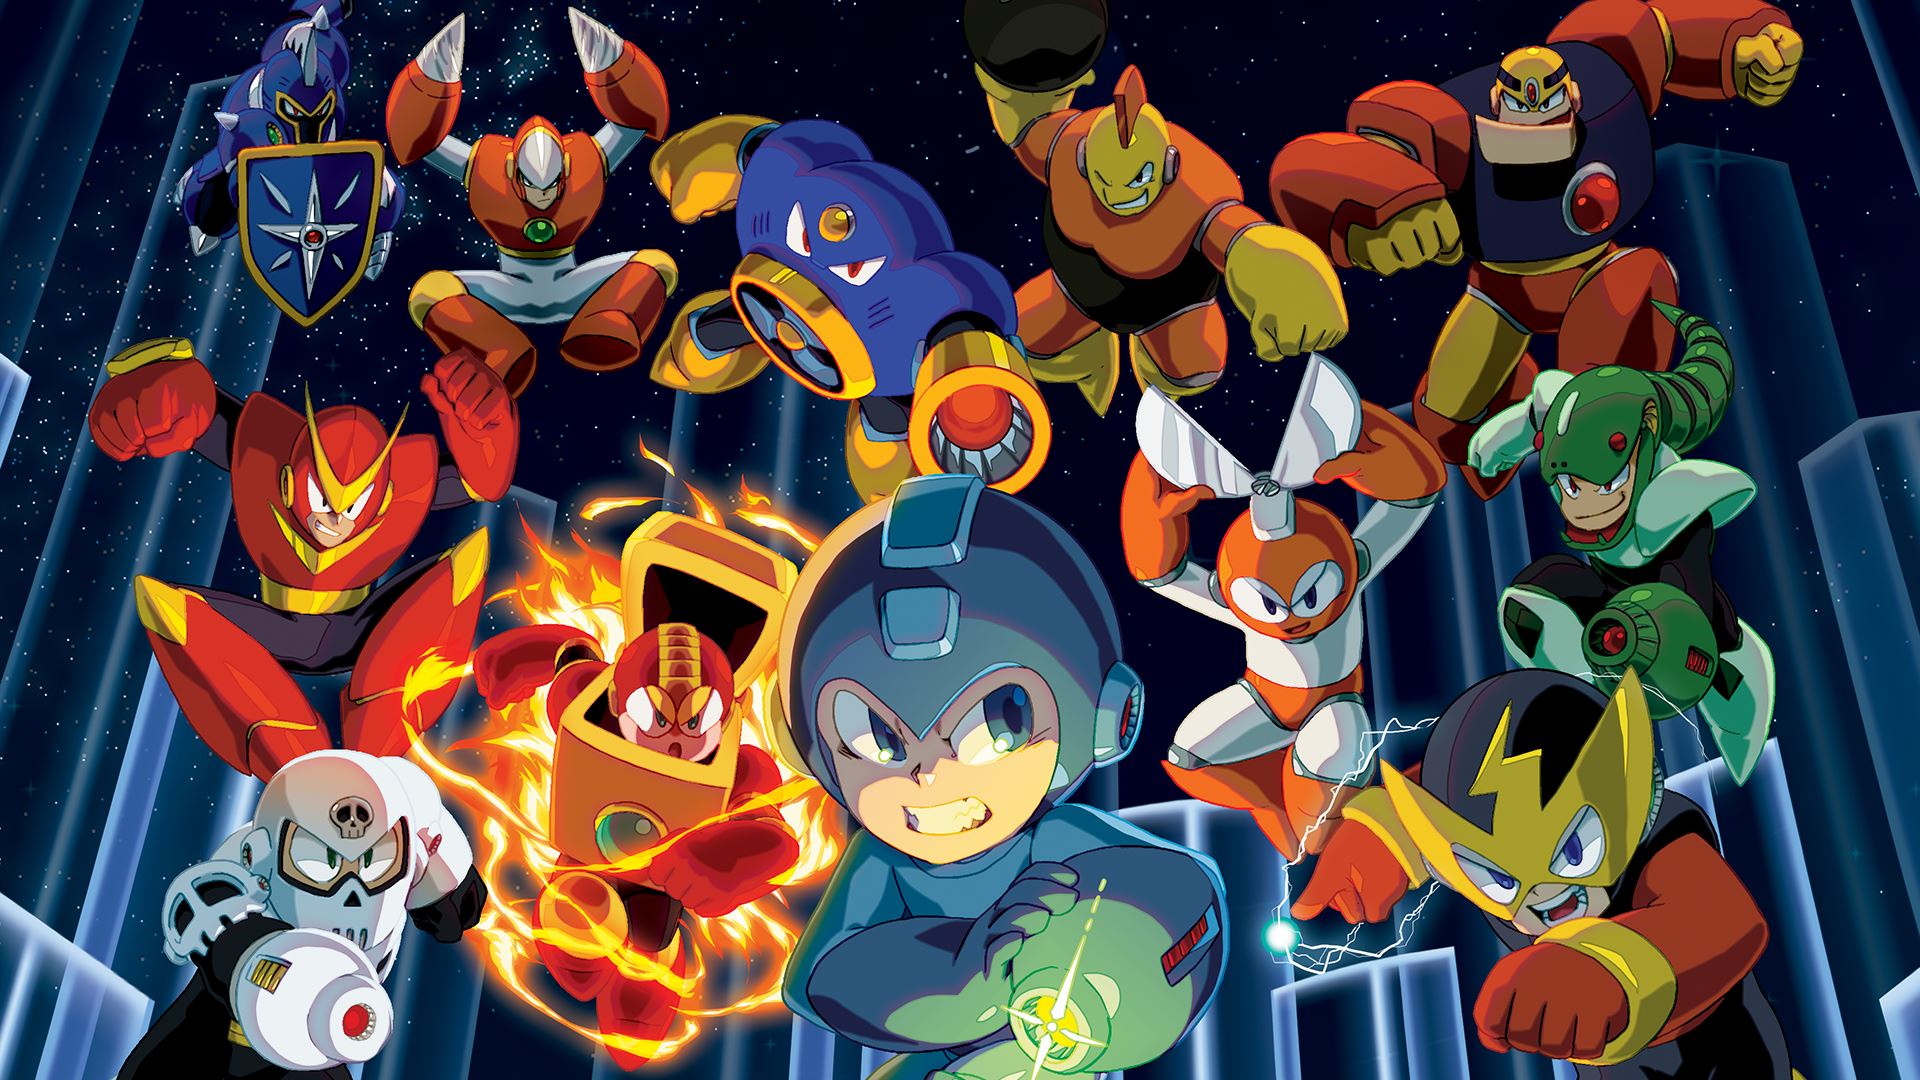 O herói Mega Man volta em algumas de suas aventuras mais icônicas na nova coleção da Capcom.